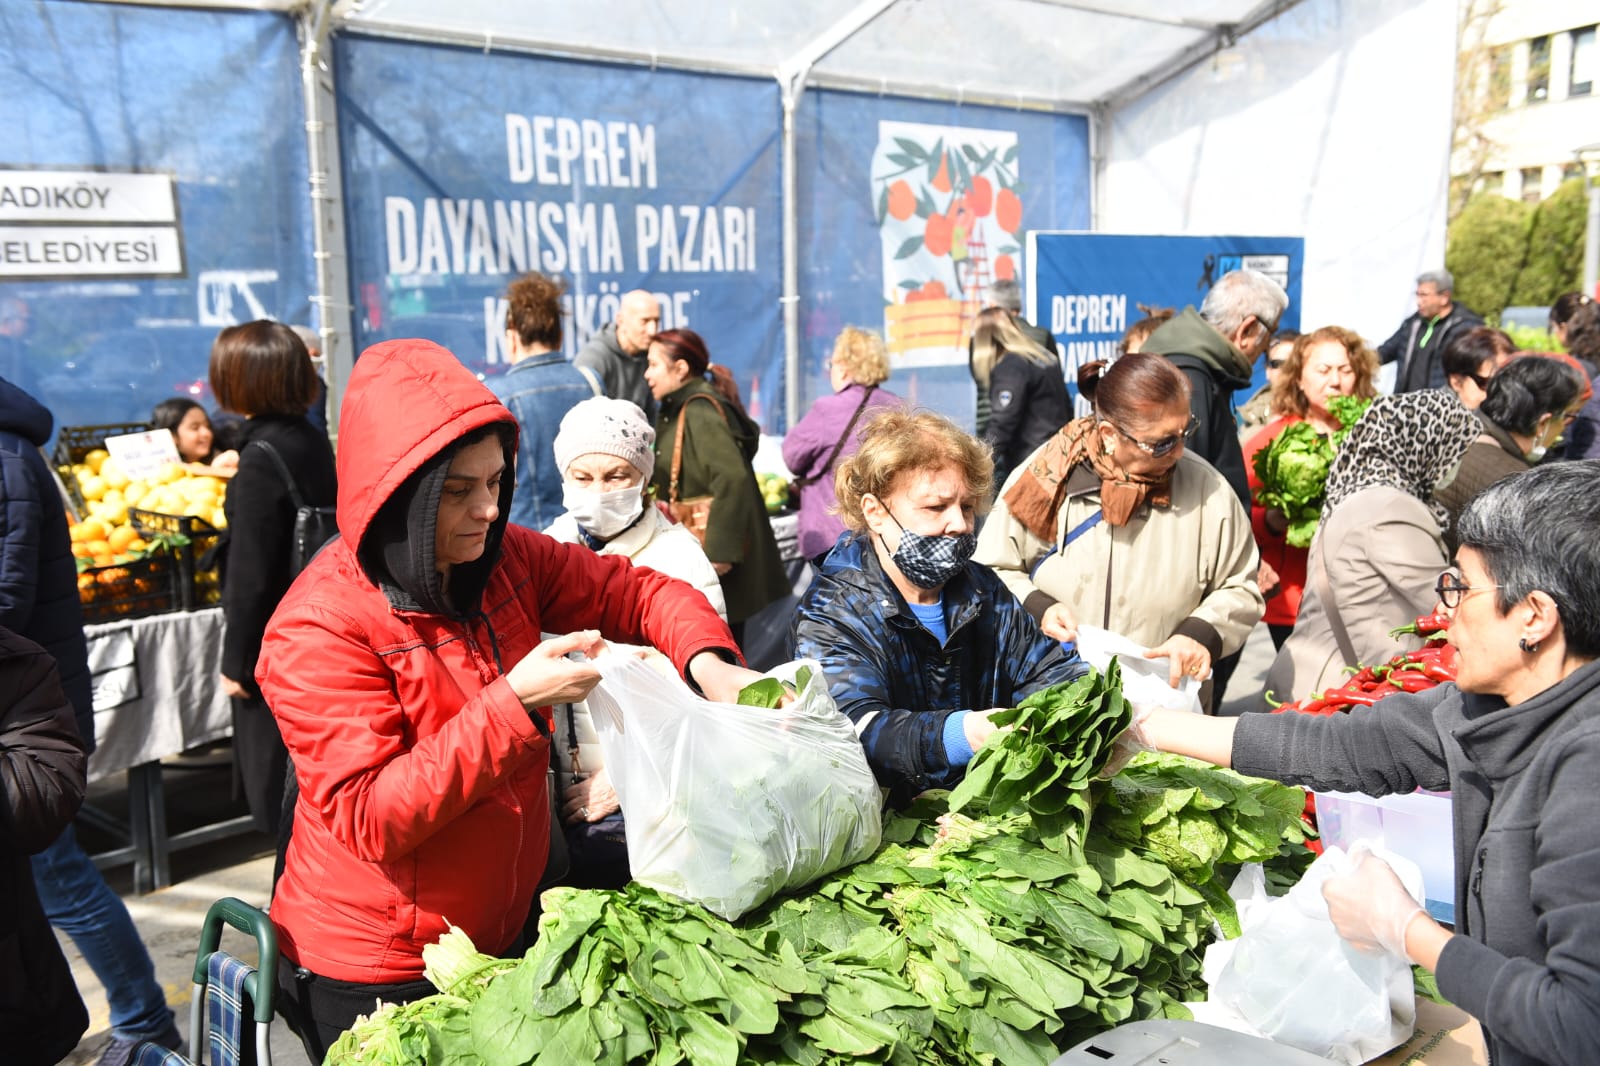 Kadıköy’den deprem dayanışma pazarı